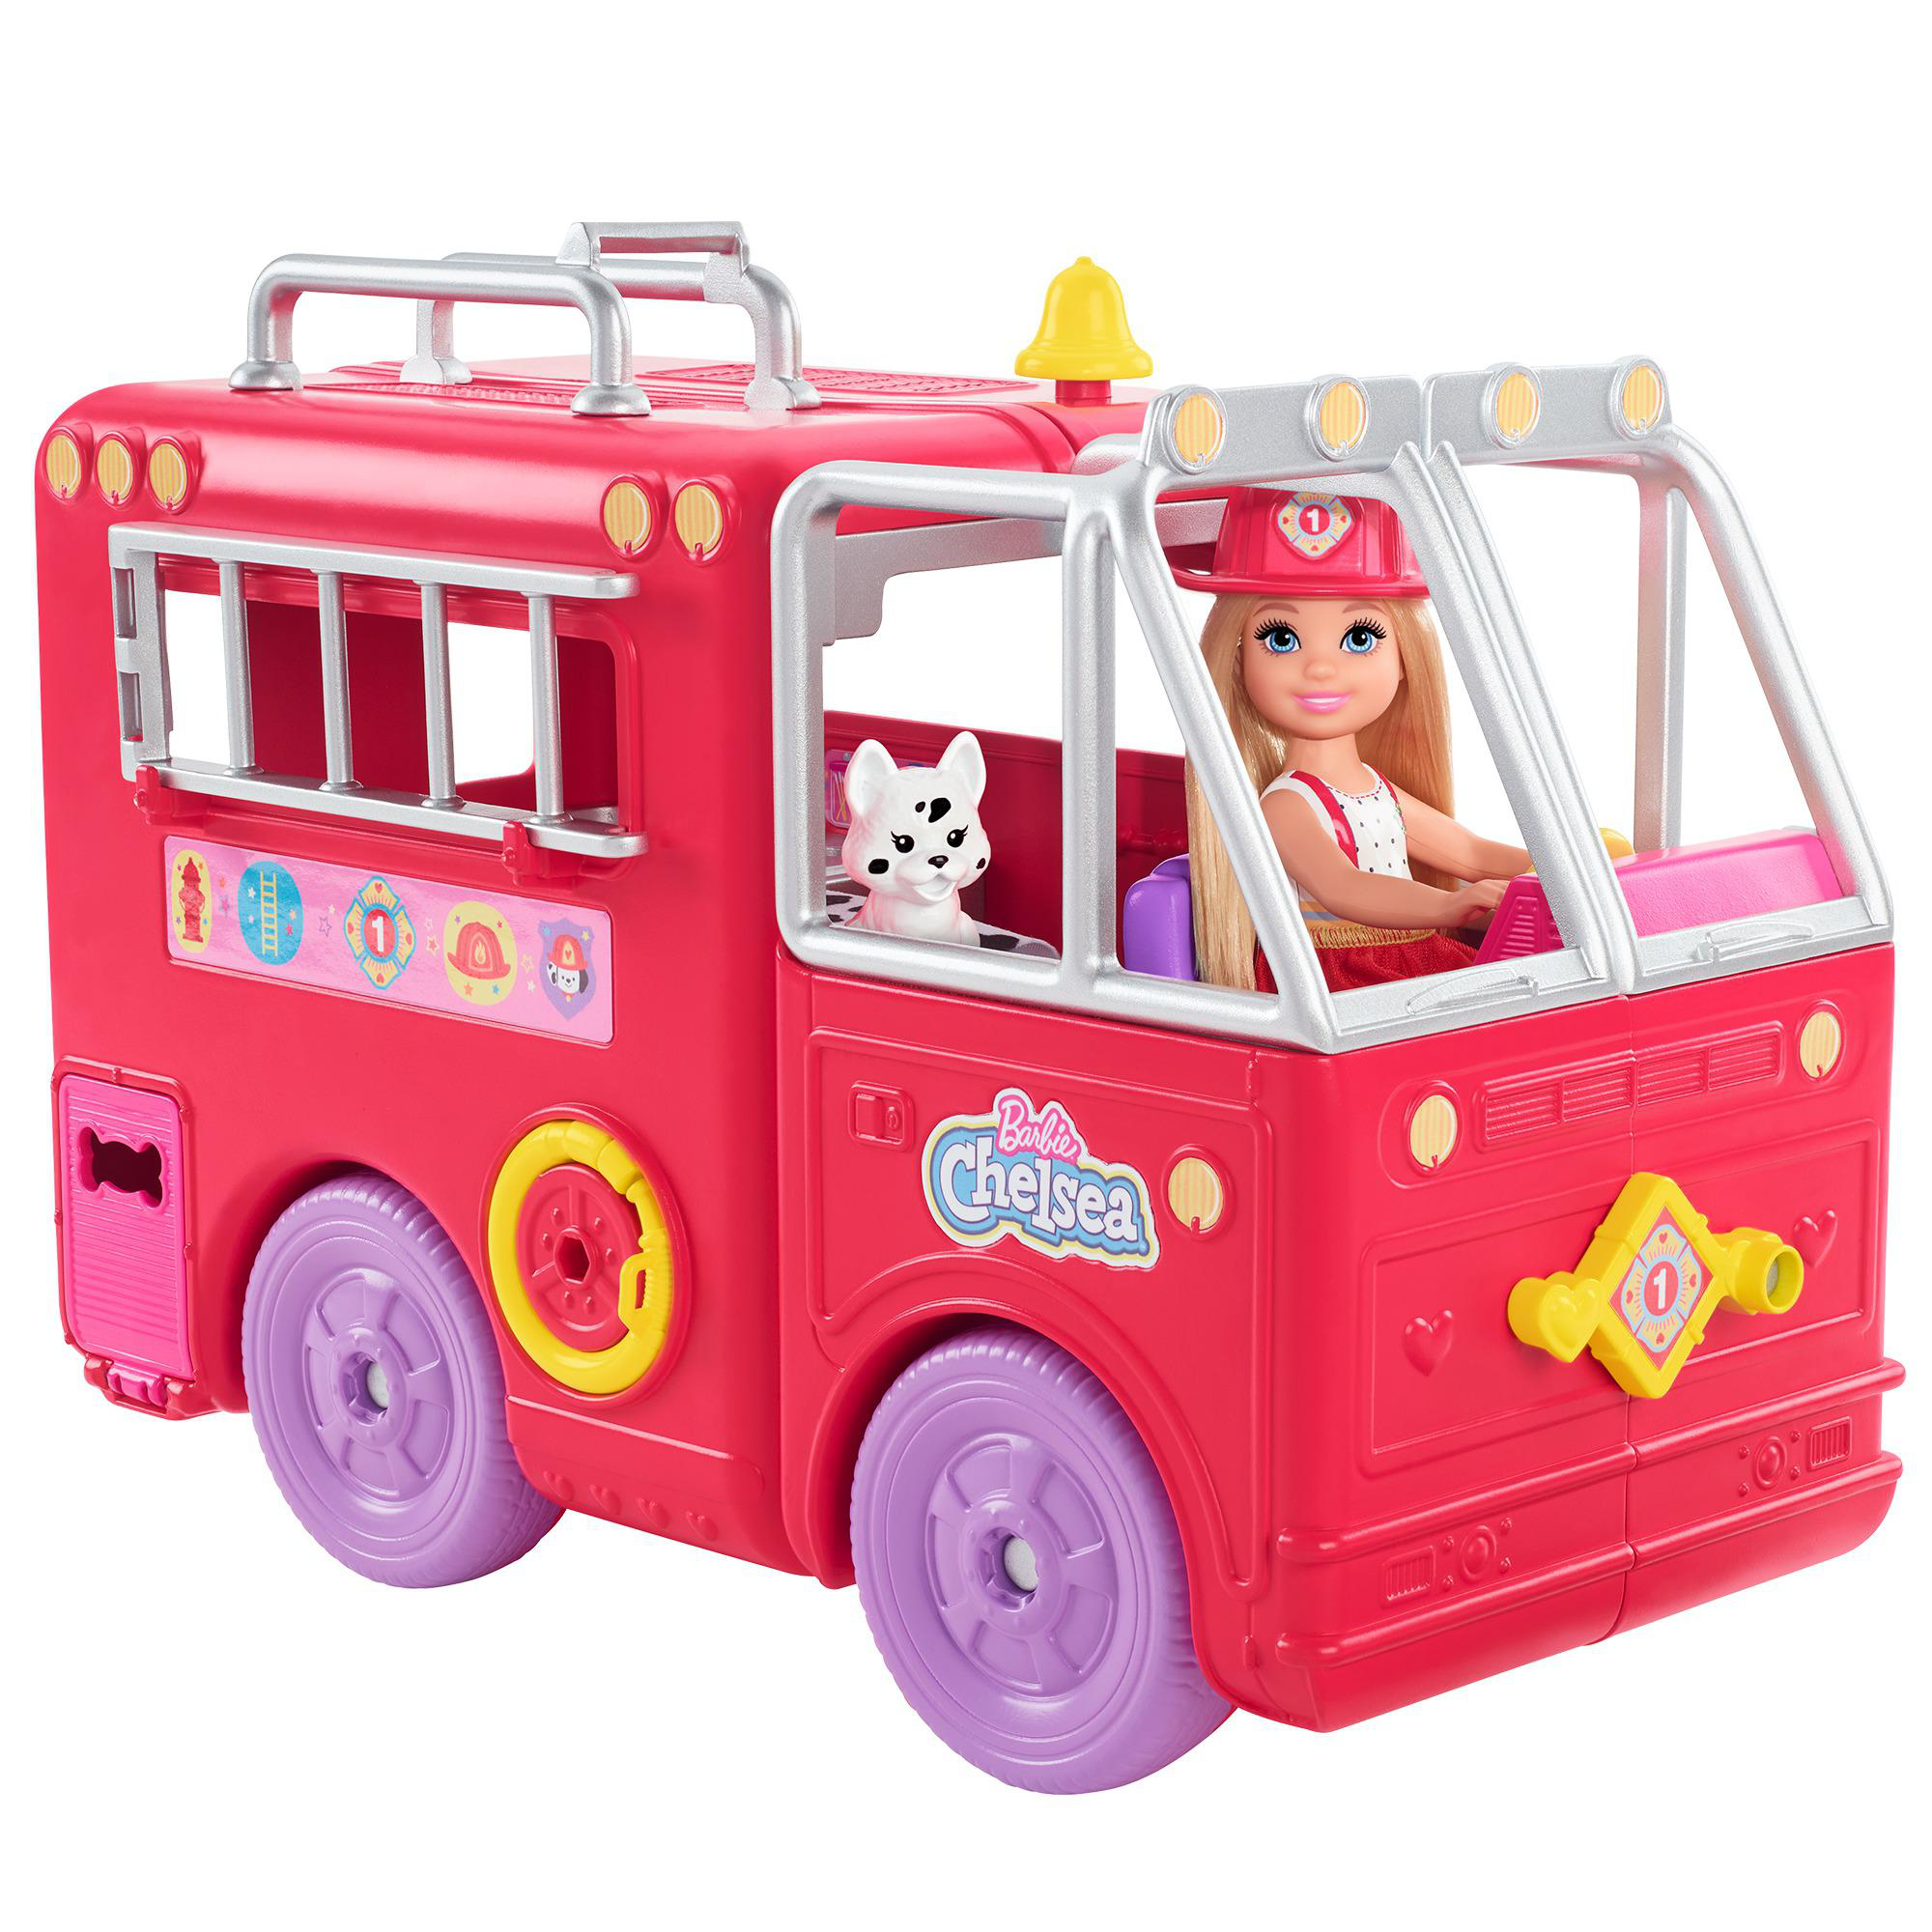 BARBIE Chelsea (blond) Spielset Feuerwehr mit Puppe Auto Mehrfarbig